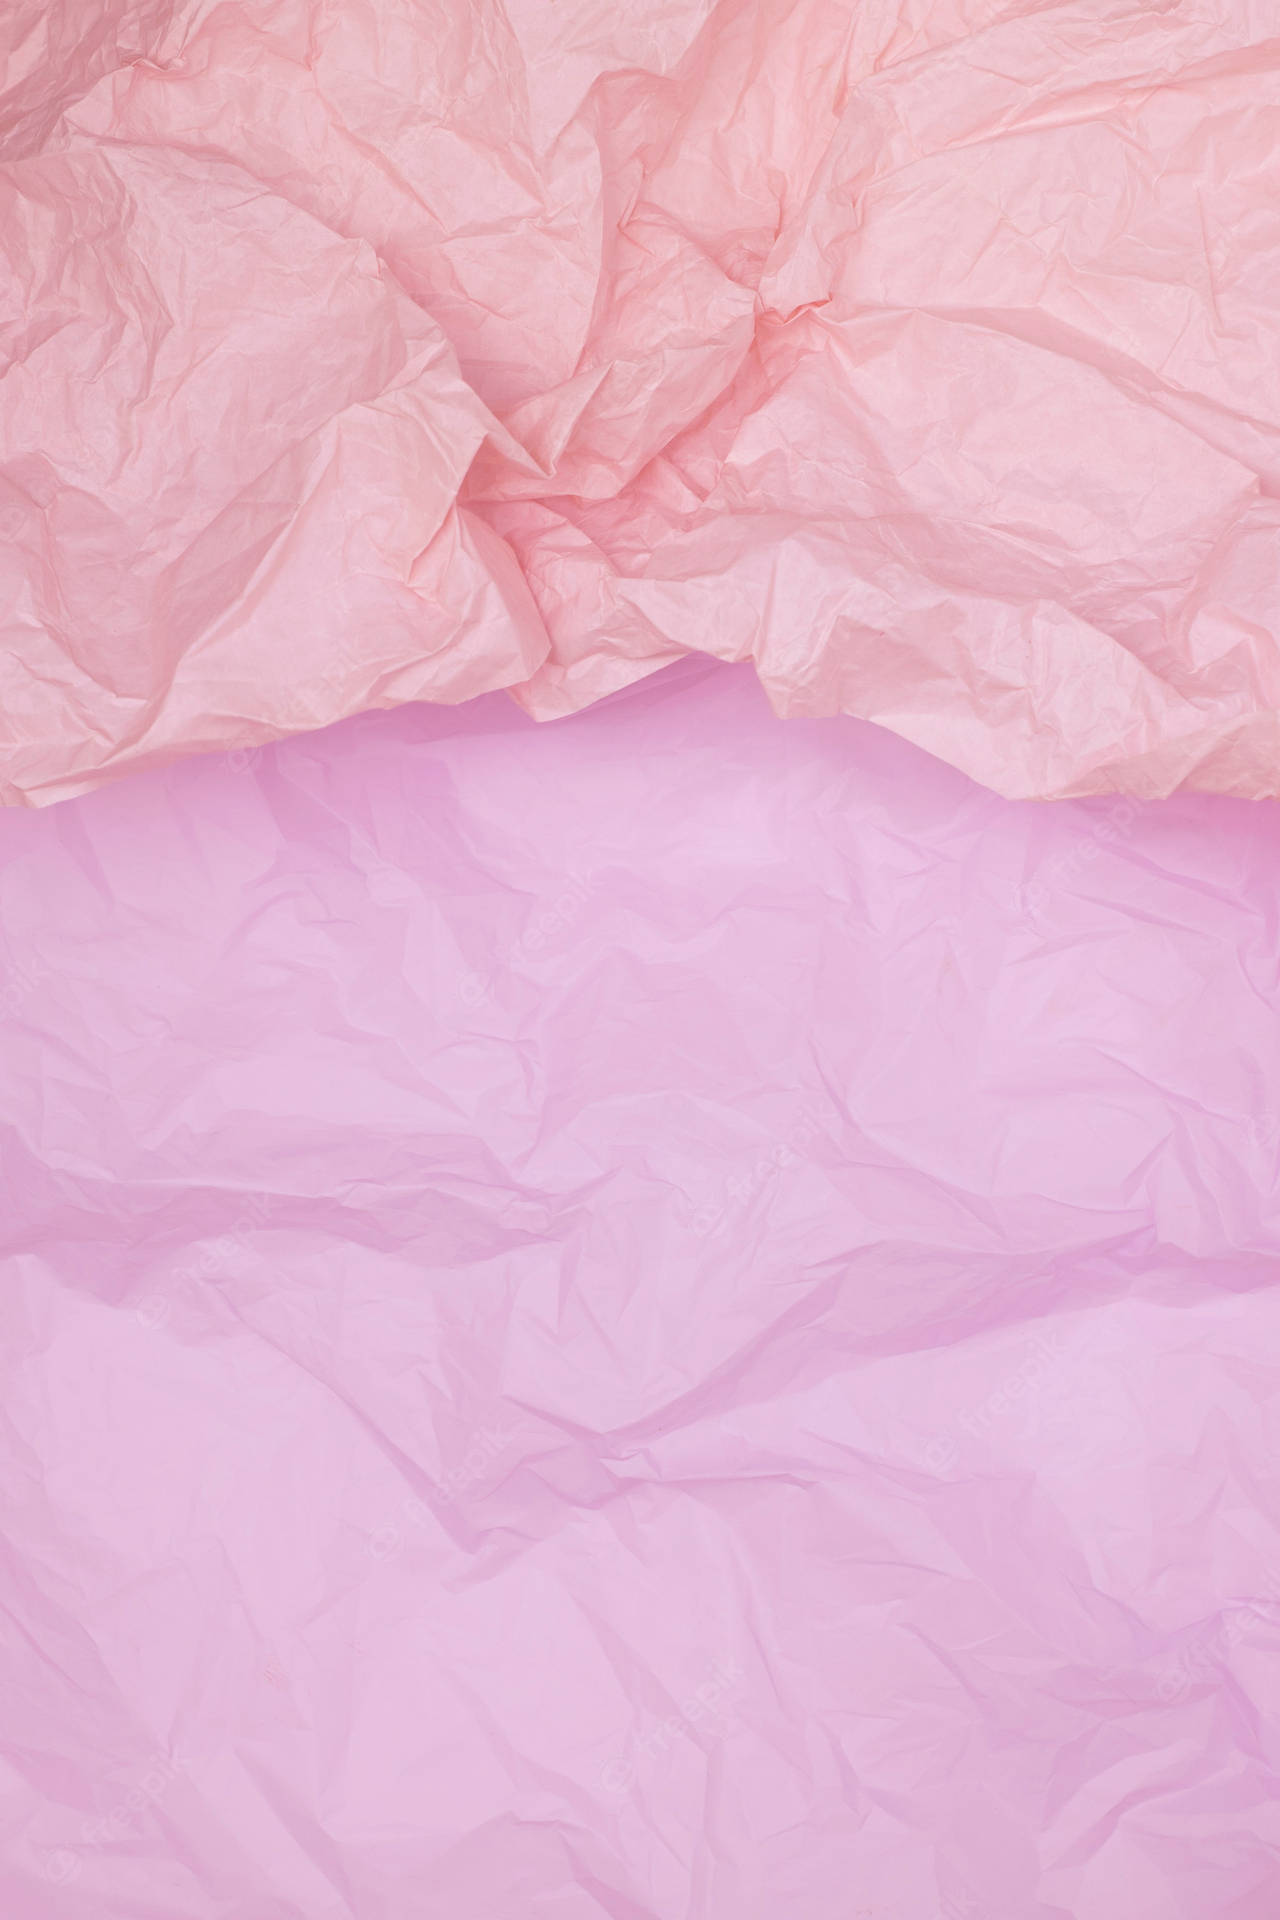 Light Pink Crumpled Paper Wallpaper